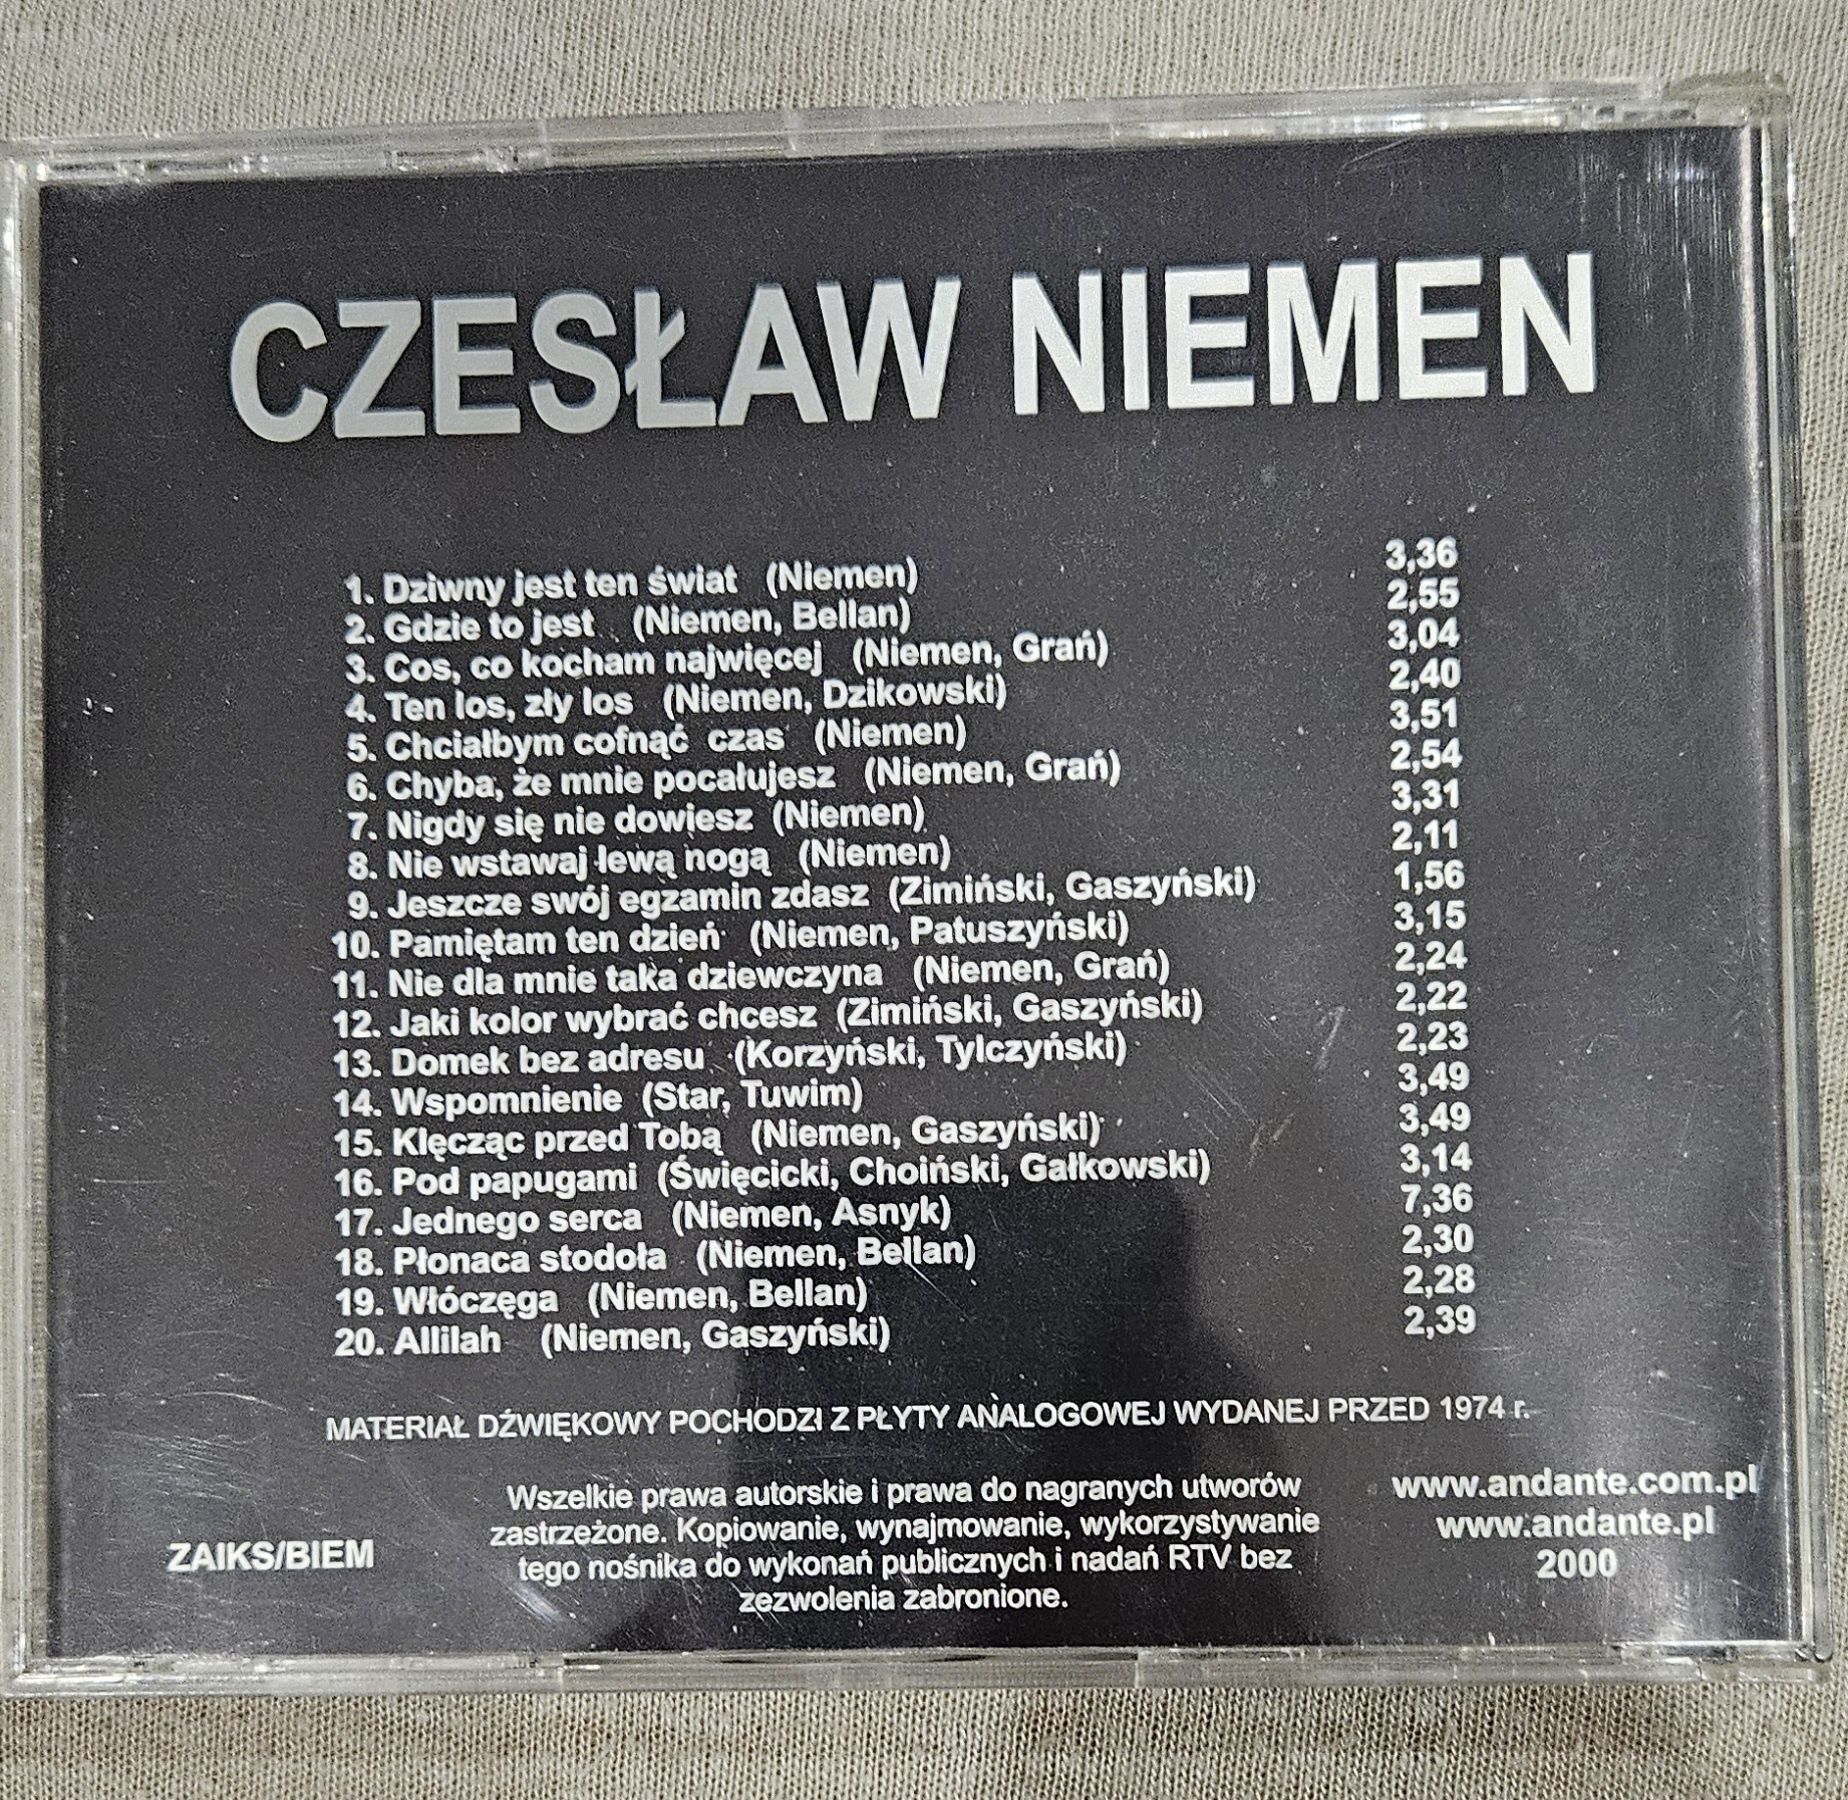 Czesław Niemen gold edition